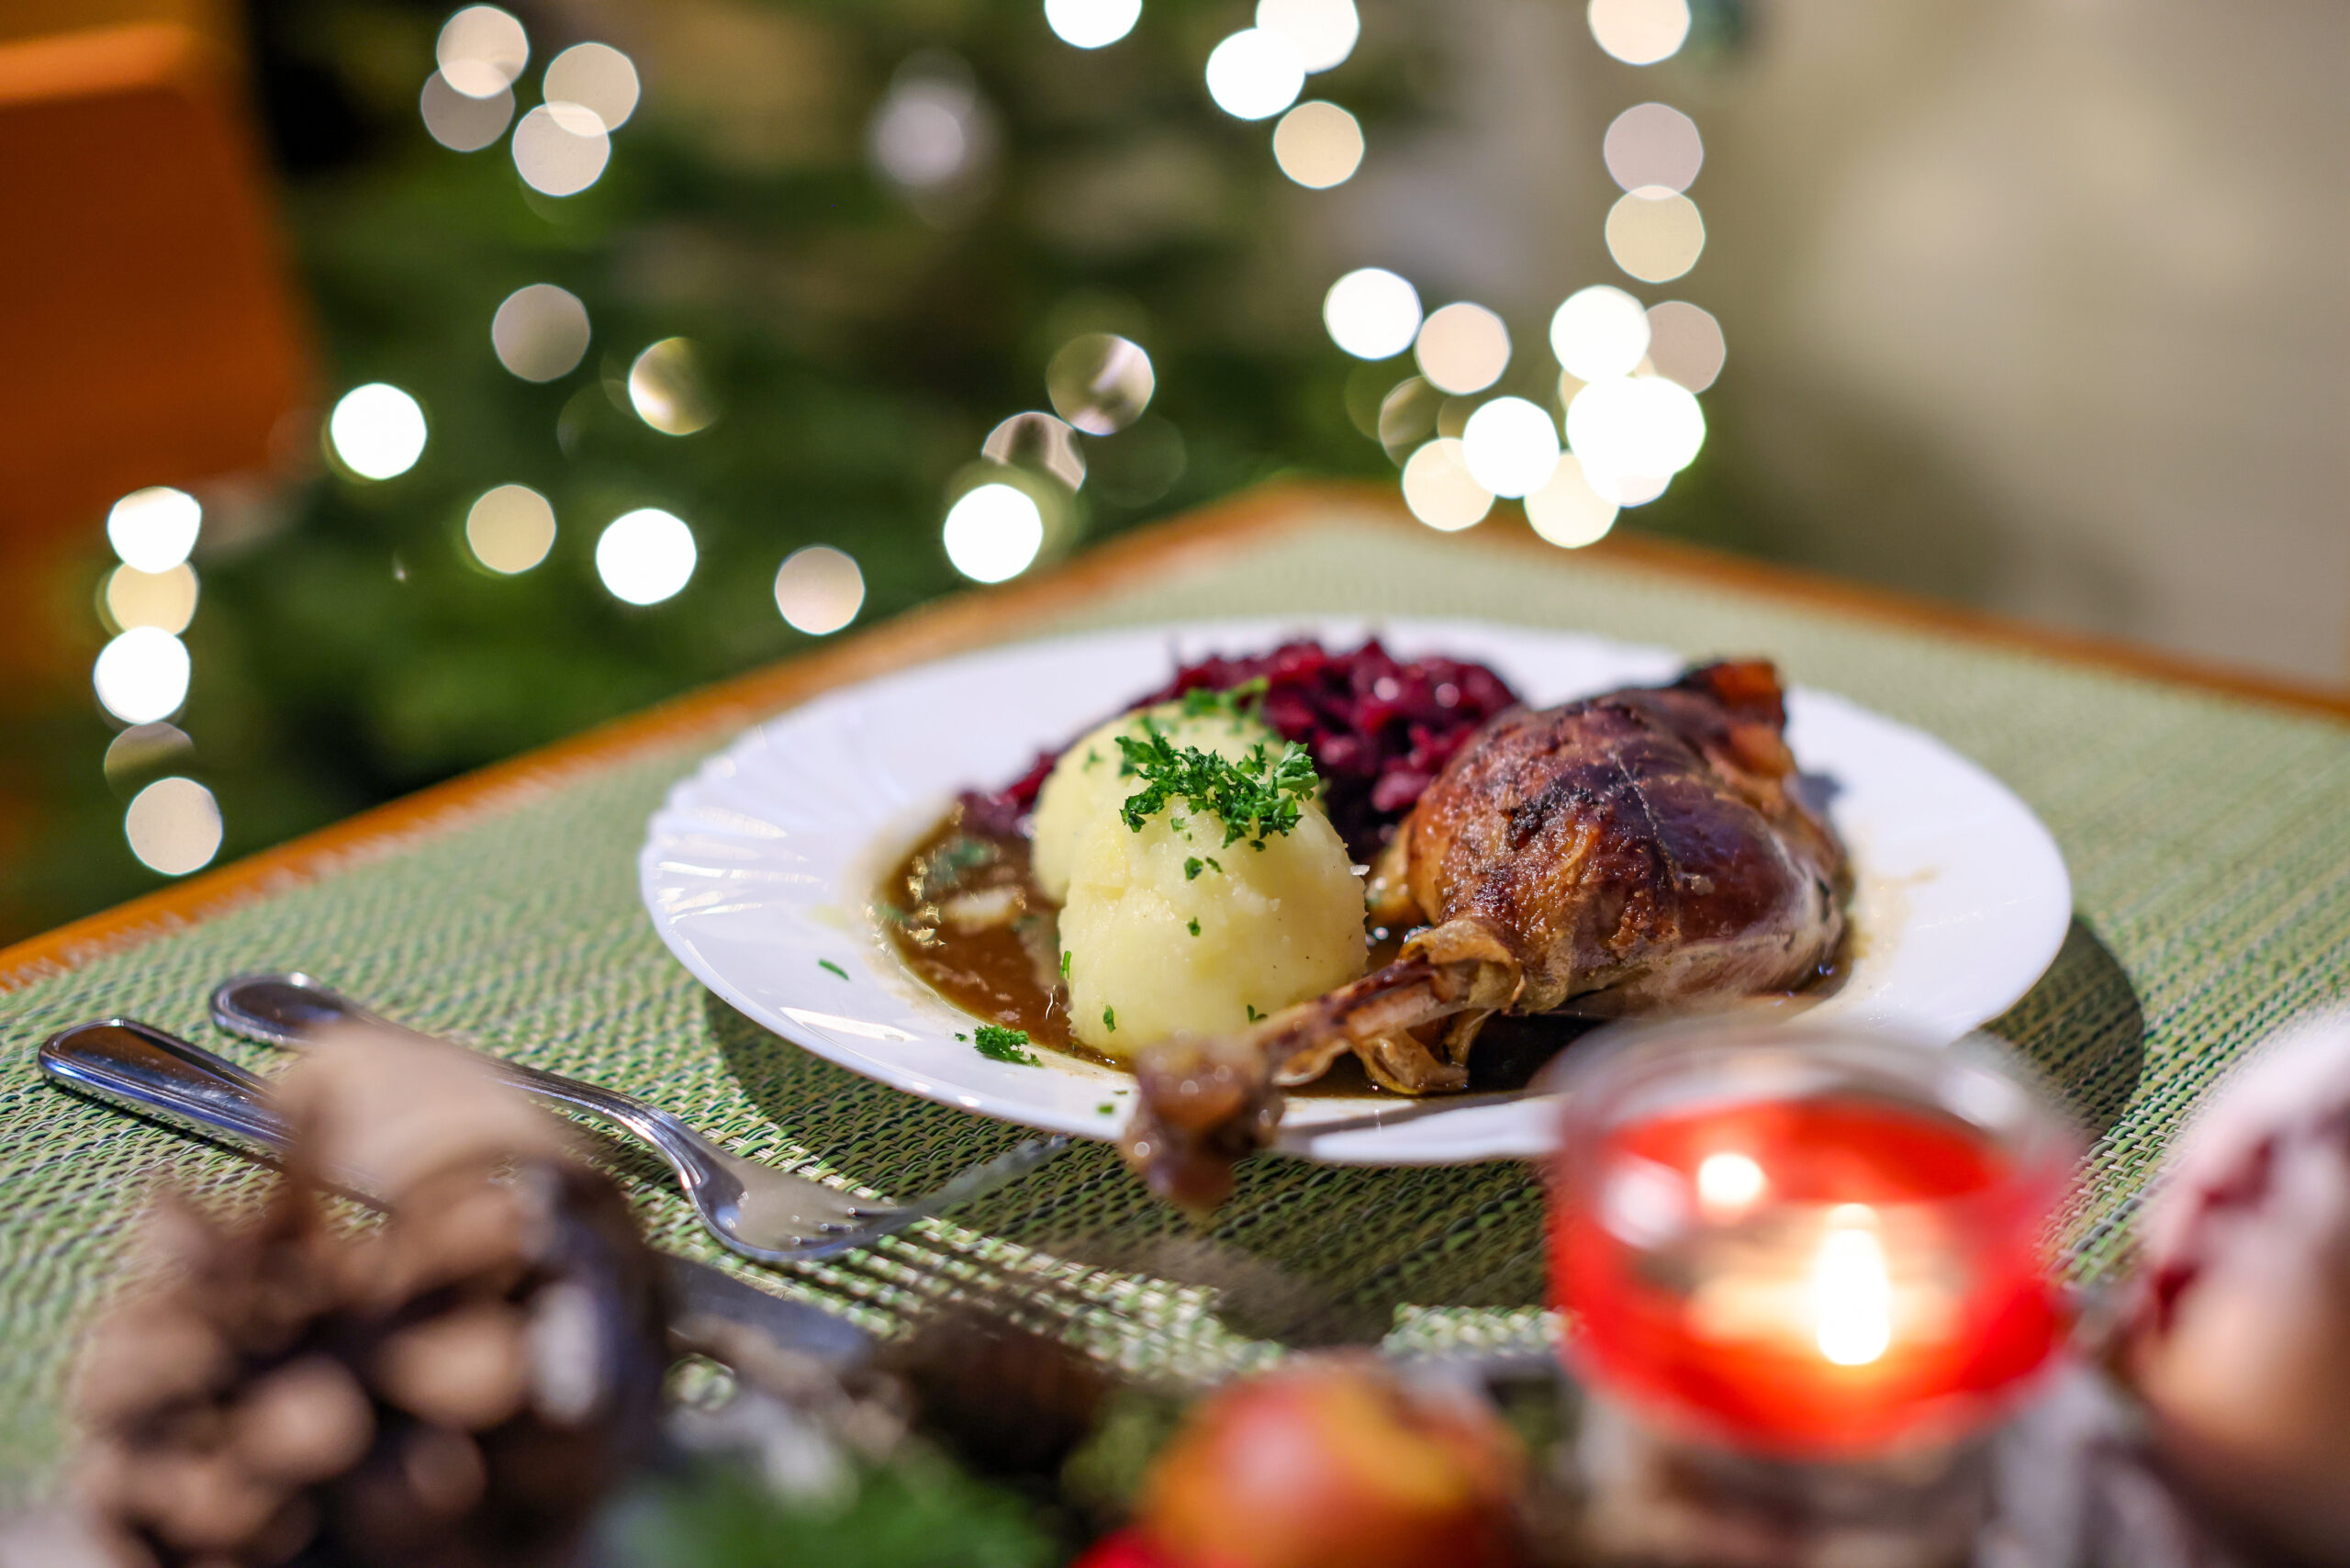 An Weihnachten kommt in vielen Familien Gänsebraten auf den Tisch – in diesem Jahr könnte das Mahl deutlich teurer werden.